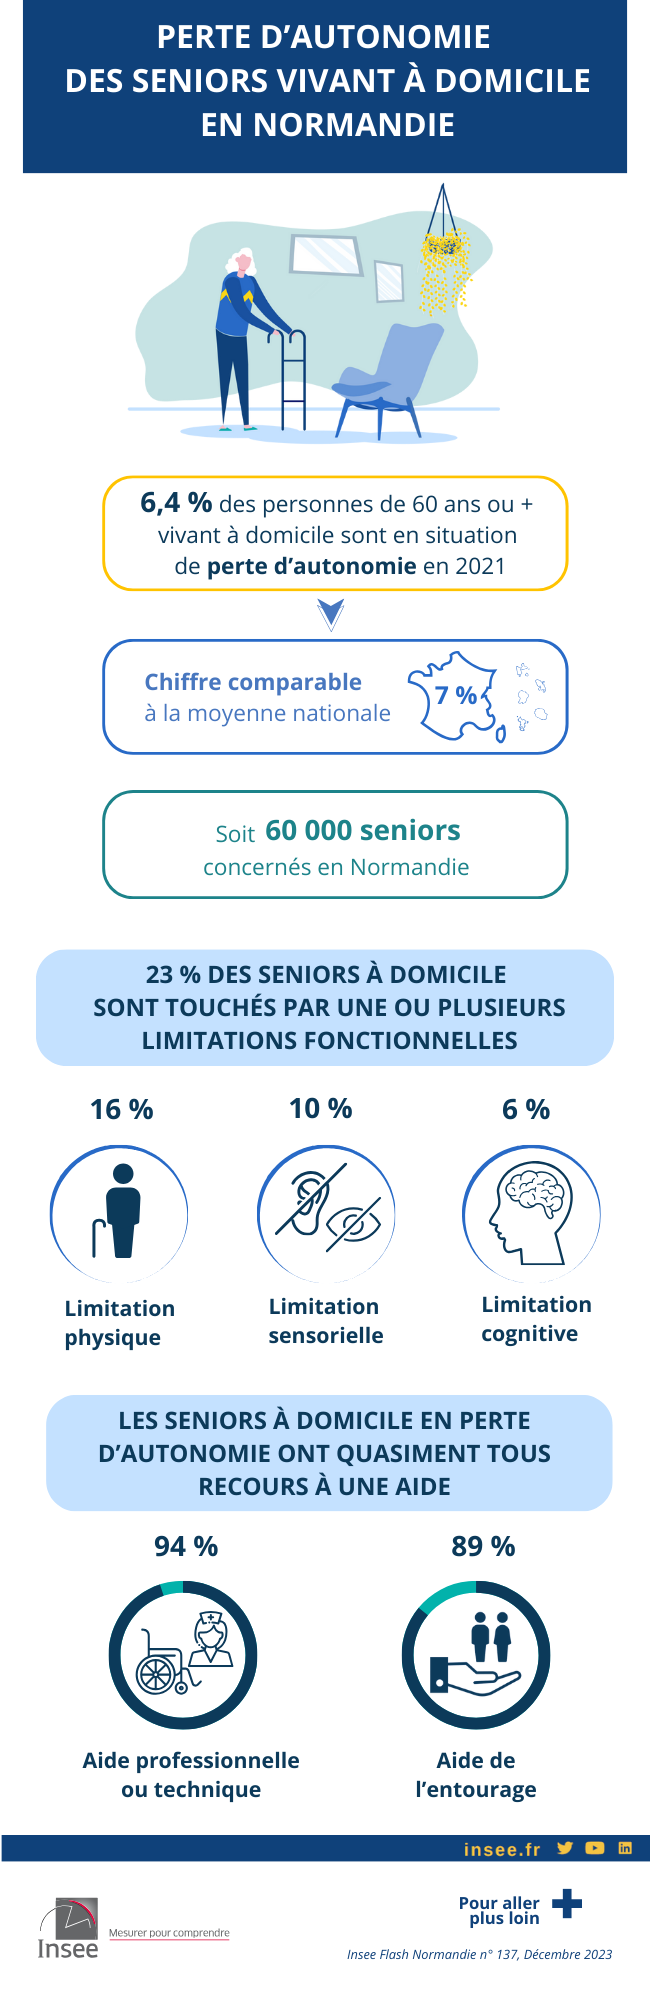 Infographie sur la perte d’autonomie en 2021 des seniors en Normandie